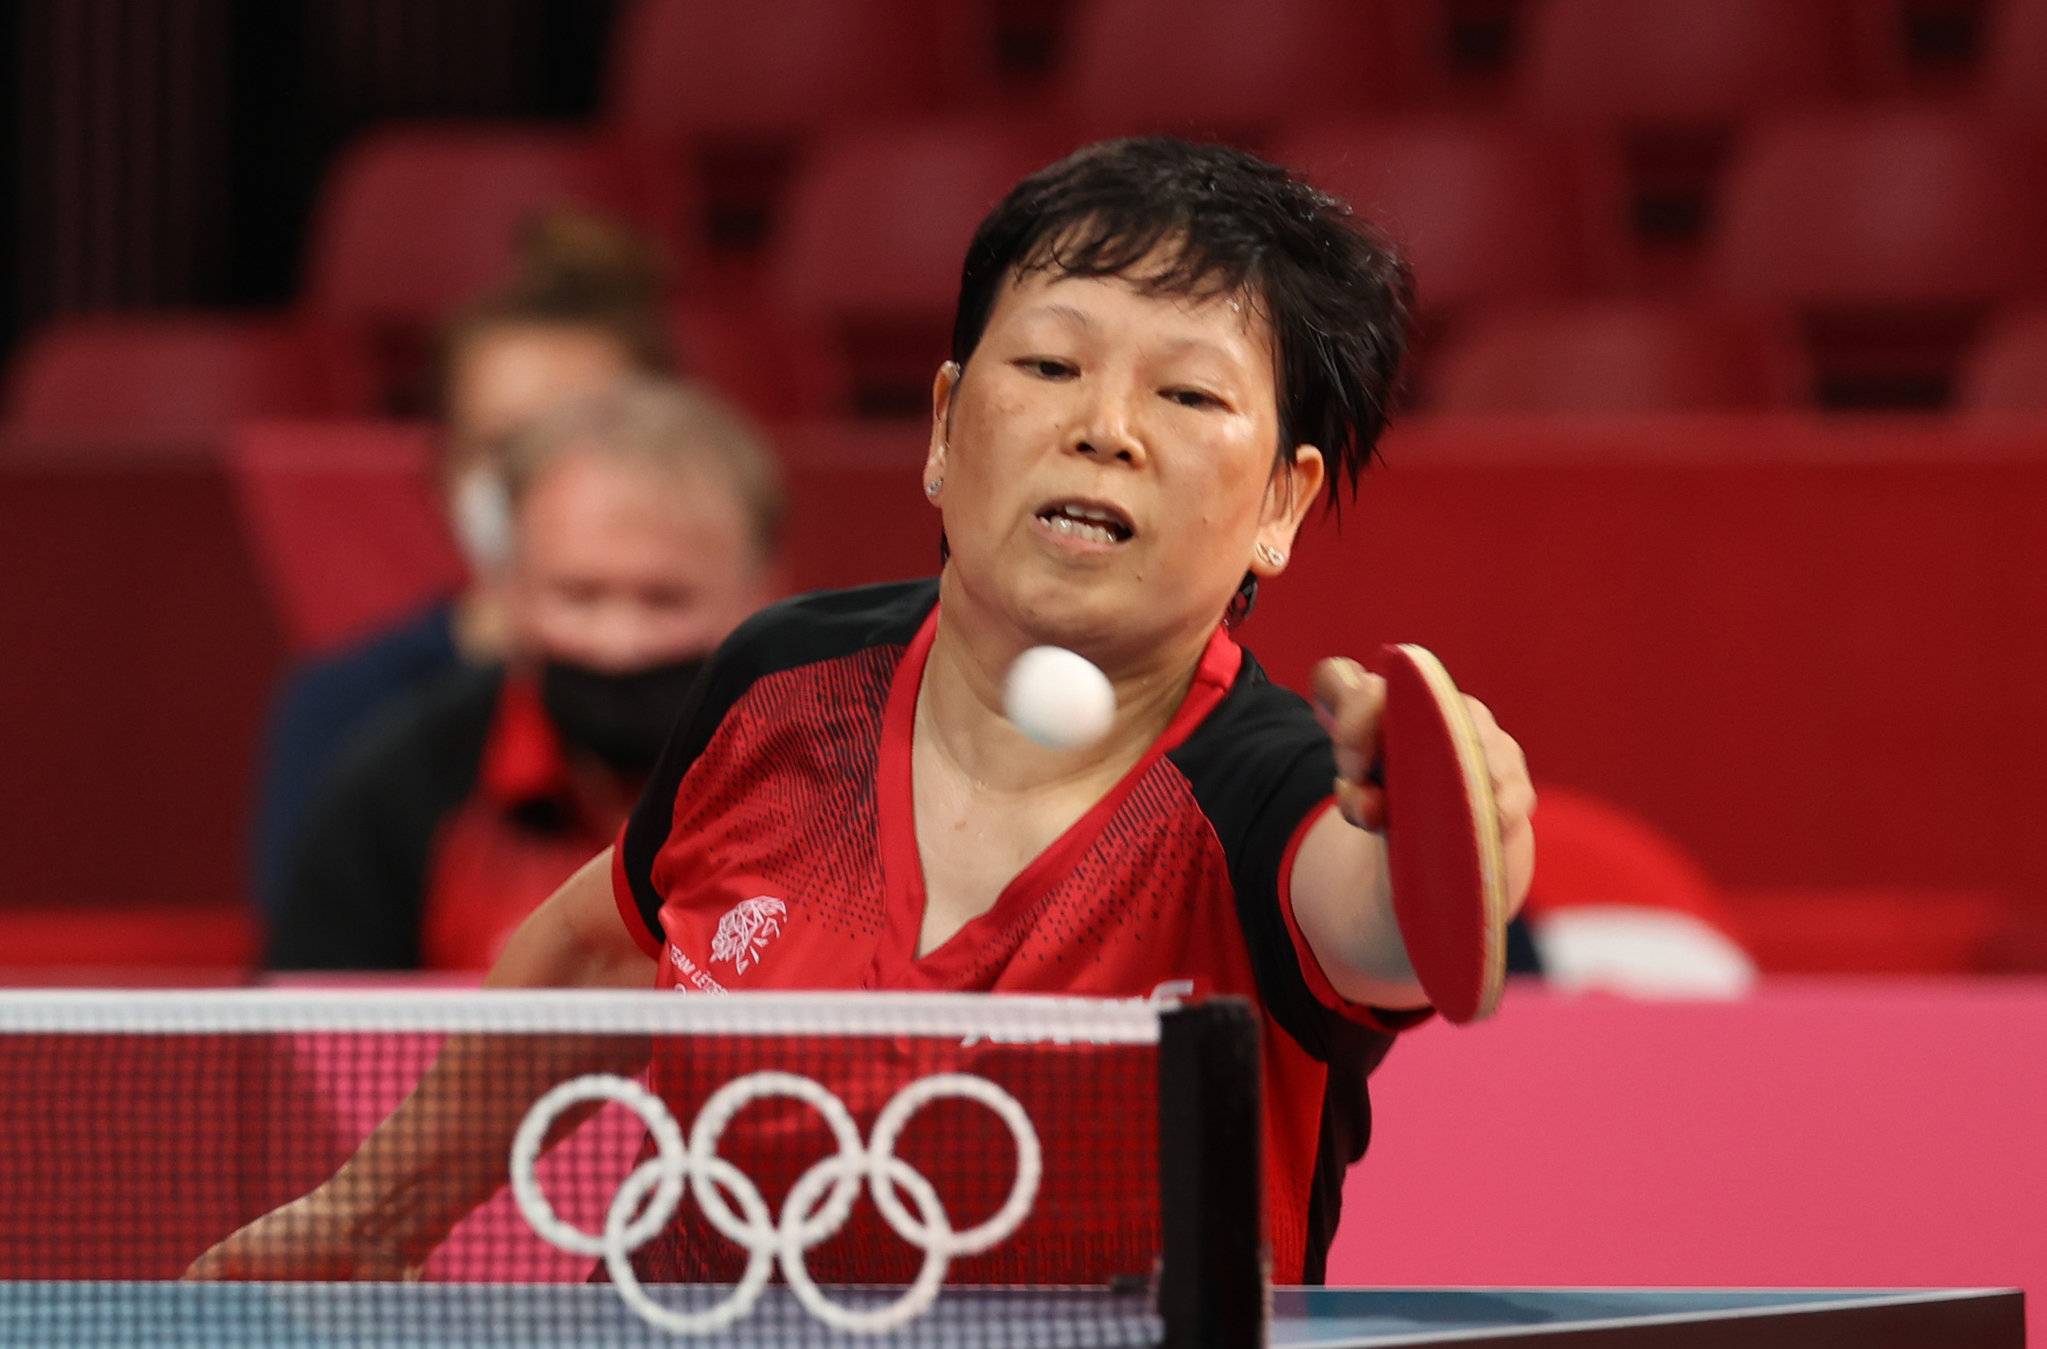 58세에 올림픽에 참가한 룩셈부르크 니샤롄이 25일 도쿄체육관에서 열린 도쿄올림픽 여자탁구 개인전에서 한국 17세 신유빈의 공을 받아내고 있다. 연합뉴스